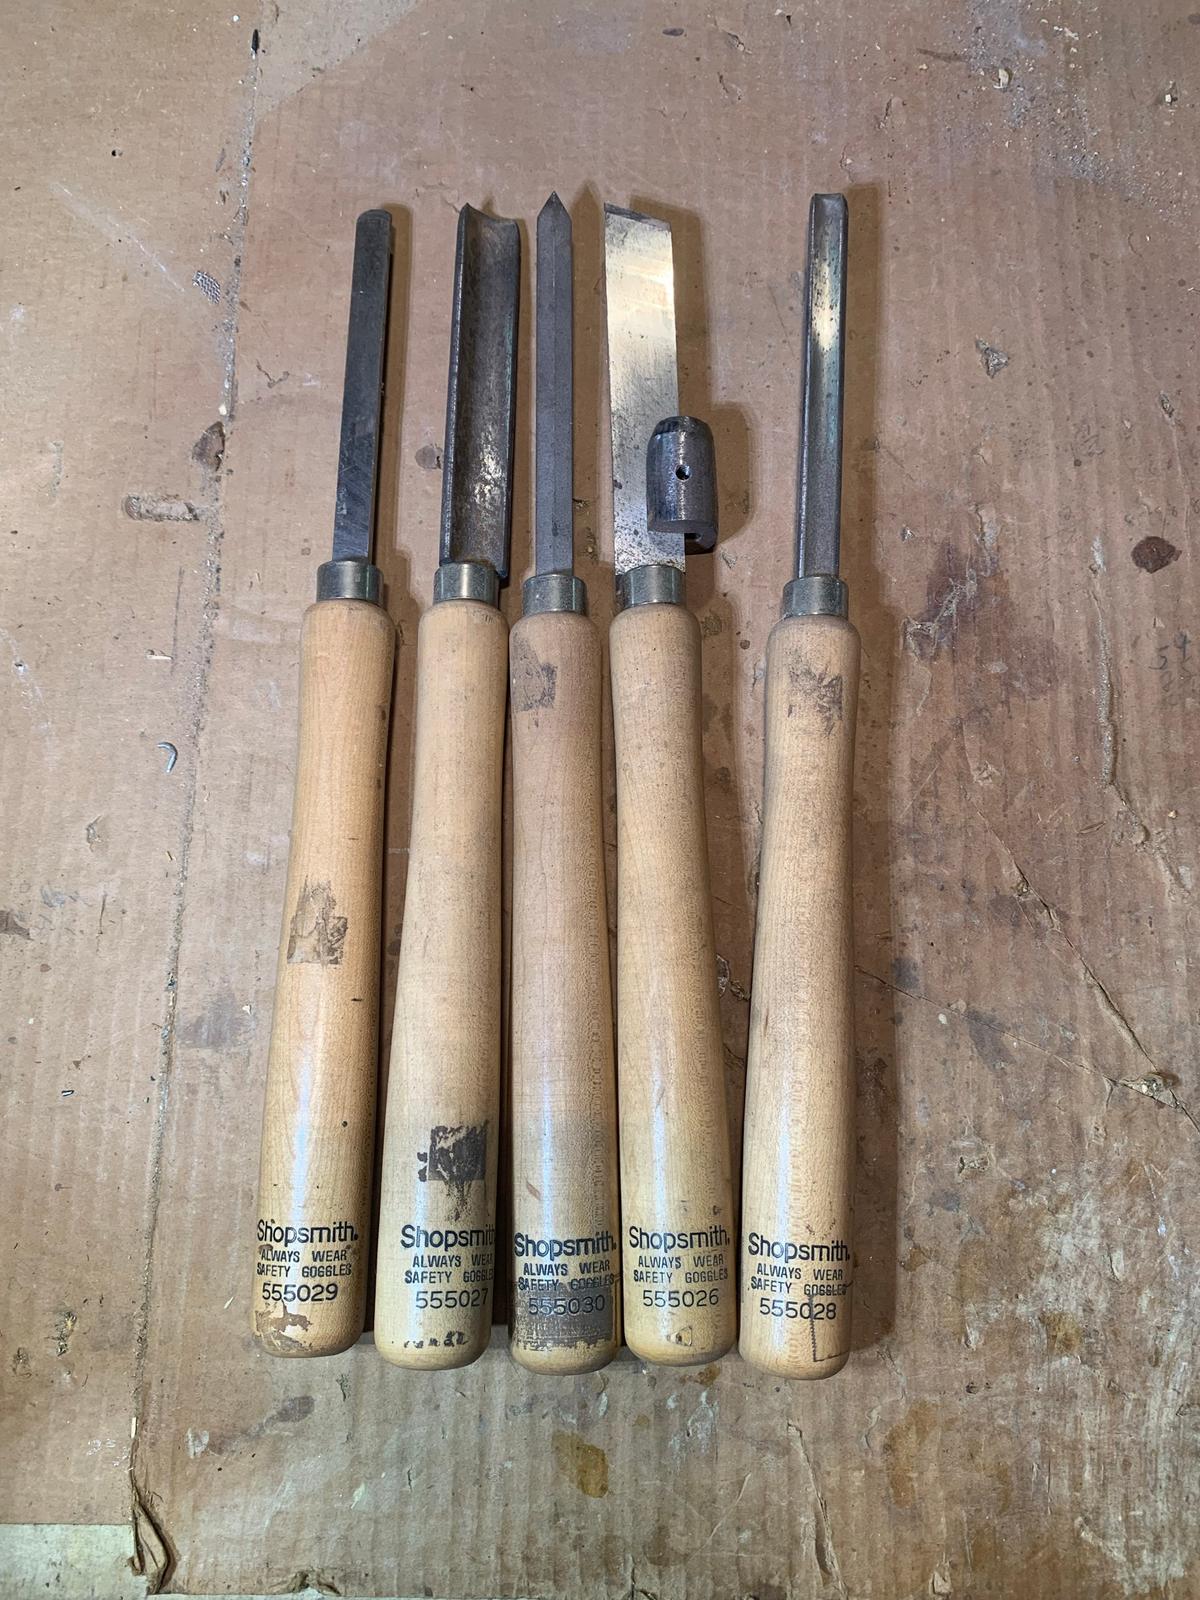 Shopsmith Wood Turning Lathe Tools